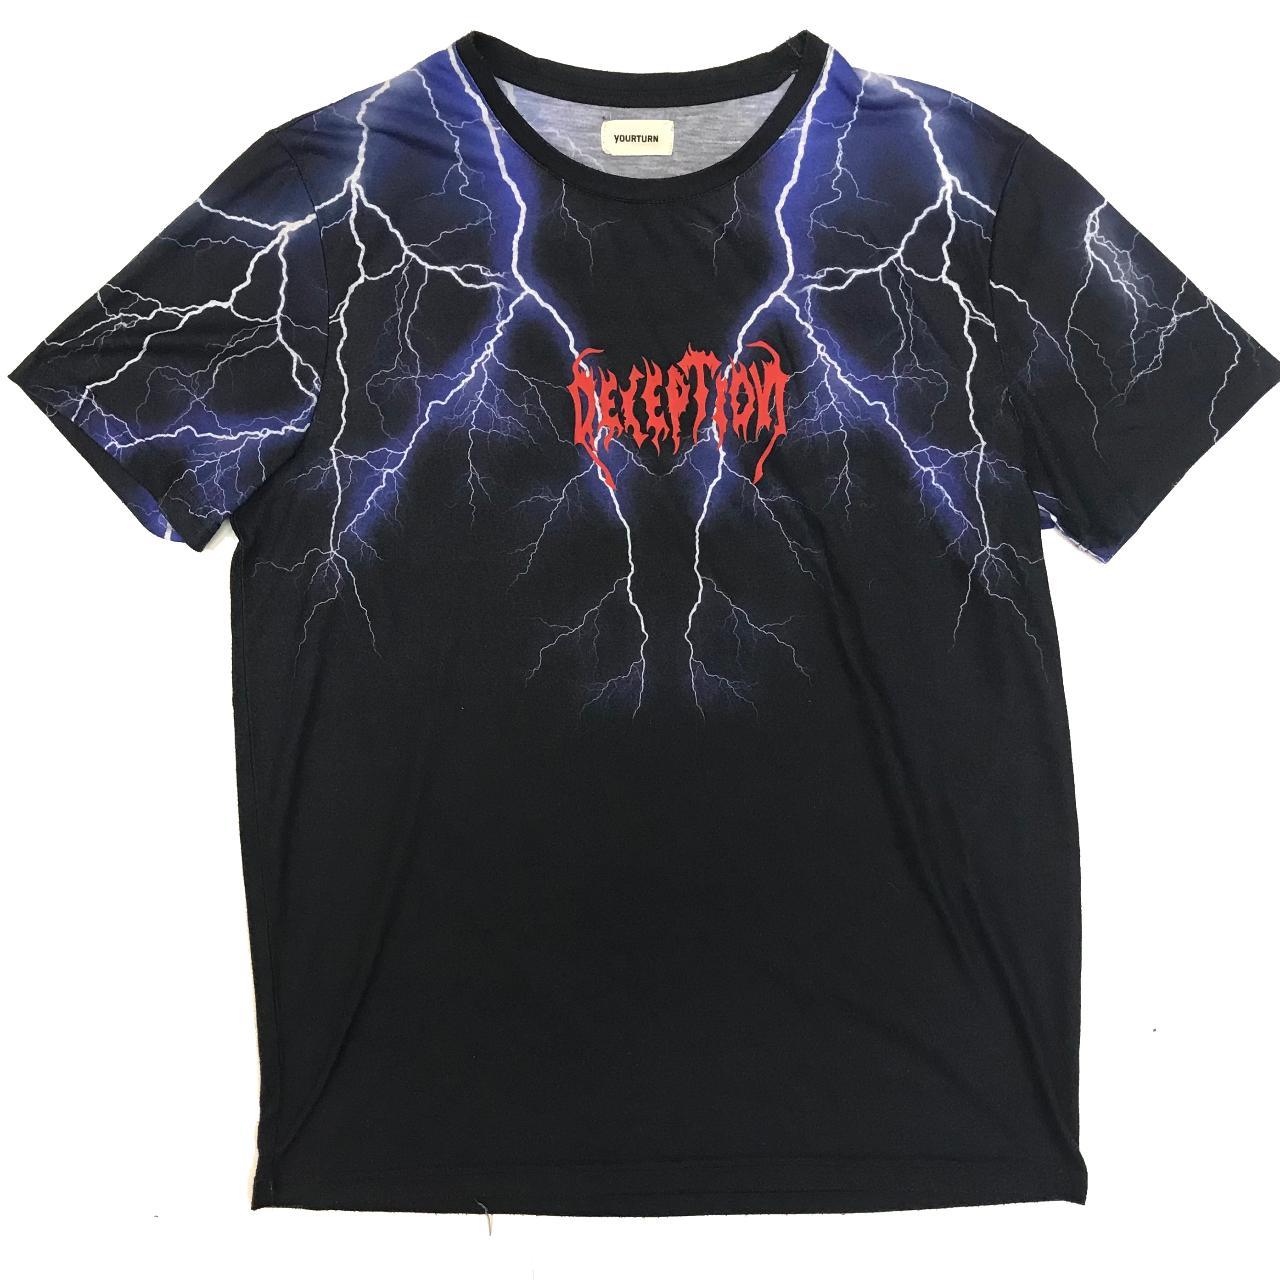 crazy lightning bolt print shirt missing size tag,... - Depop